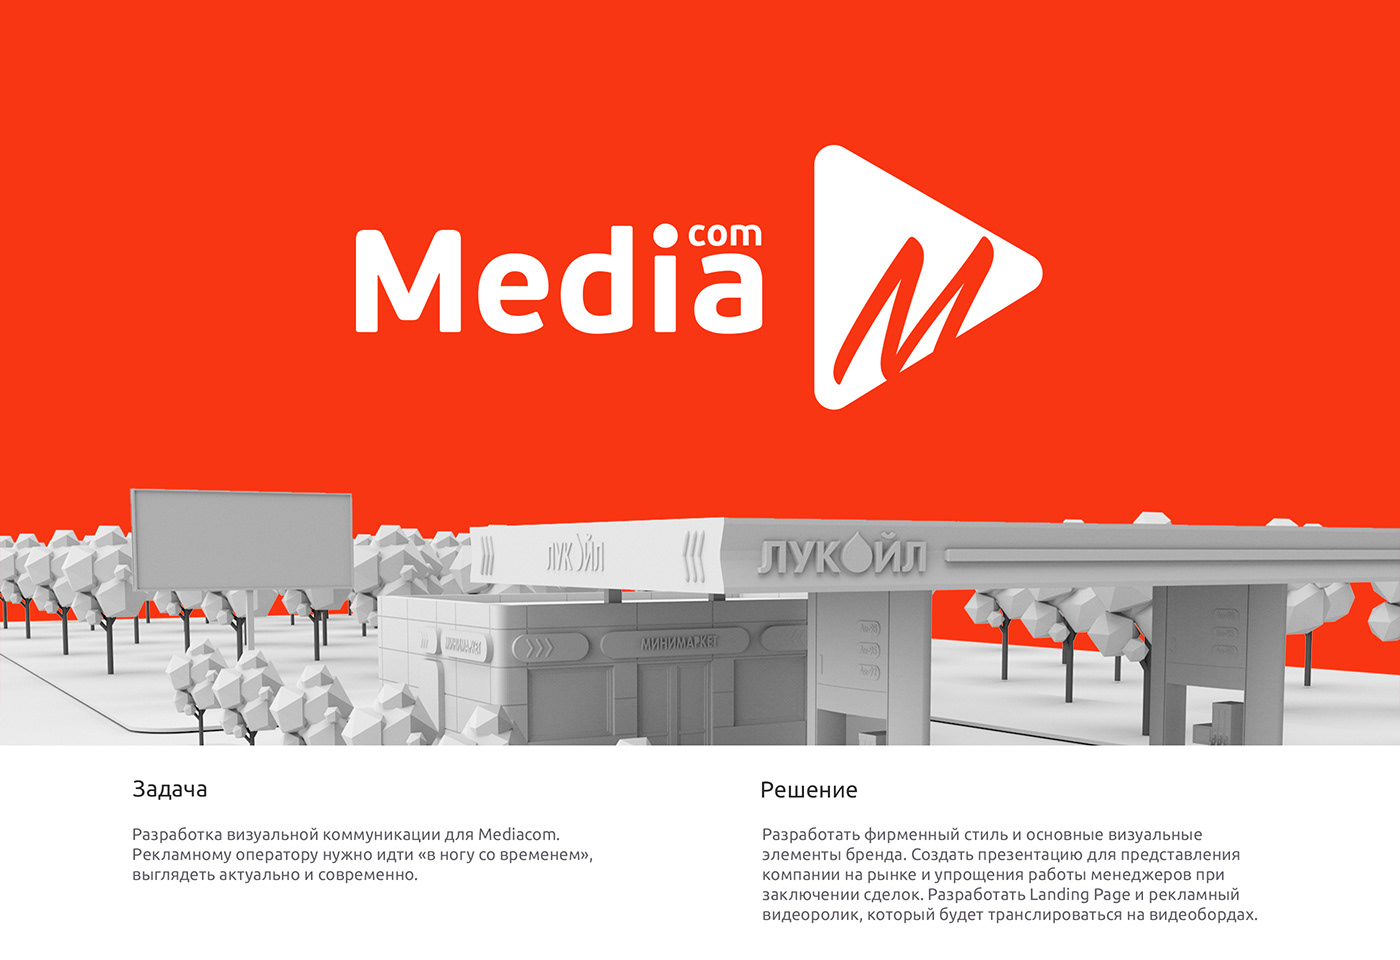 brand identity branding  logo Logotype media presentation red White mcom mediacom